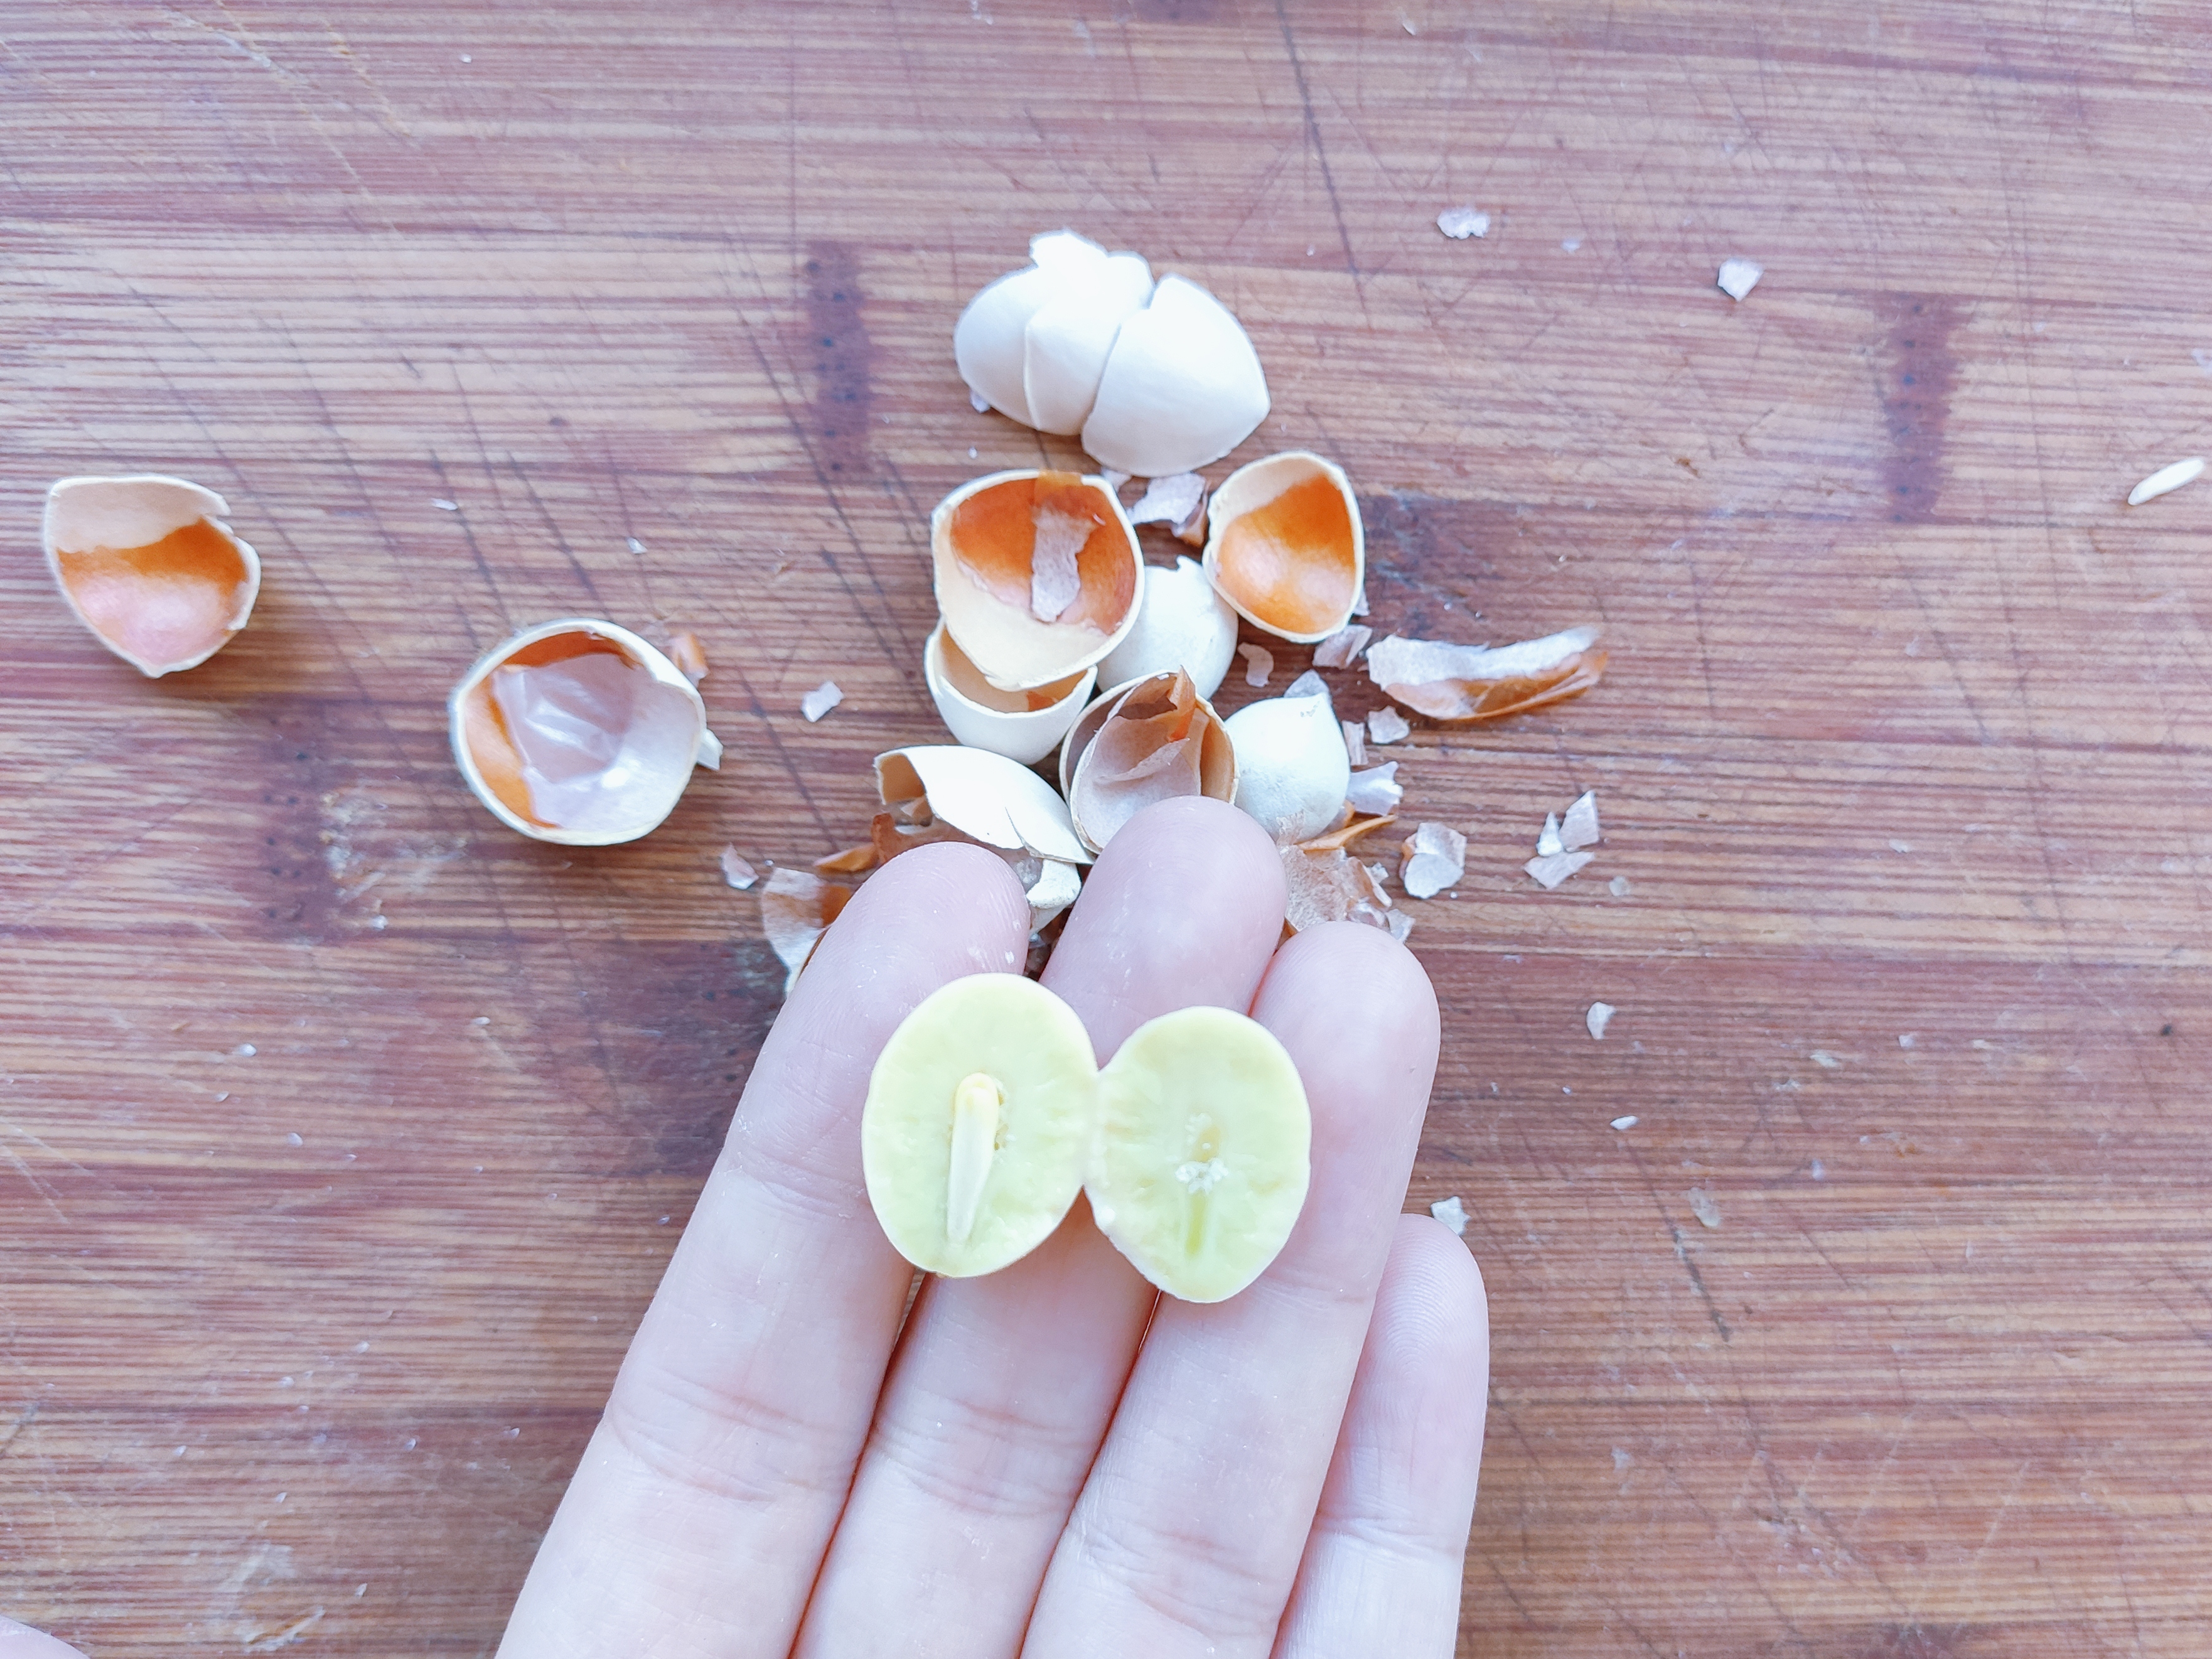 银杏果怎么吃 银杏果的食用方法 银杏果该怎样吃  第6张